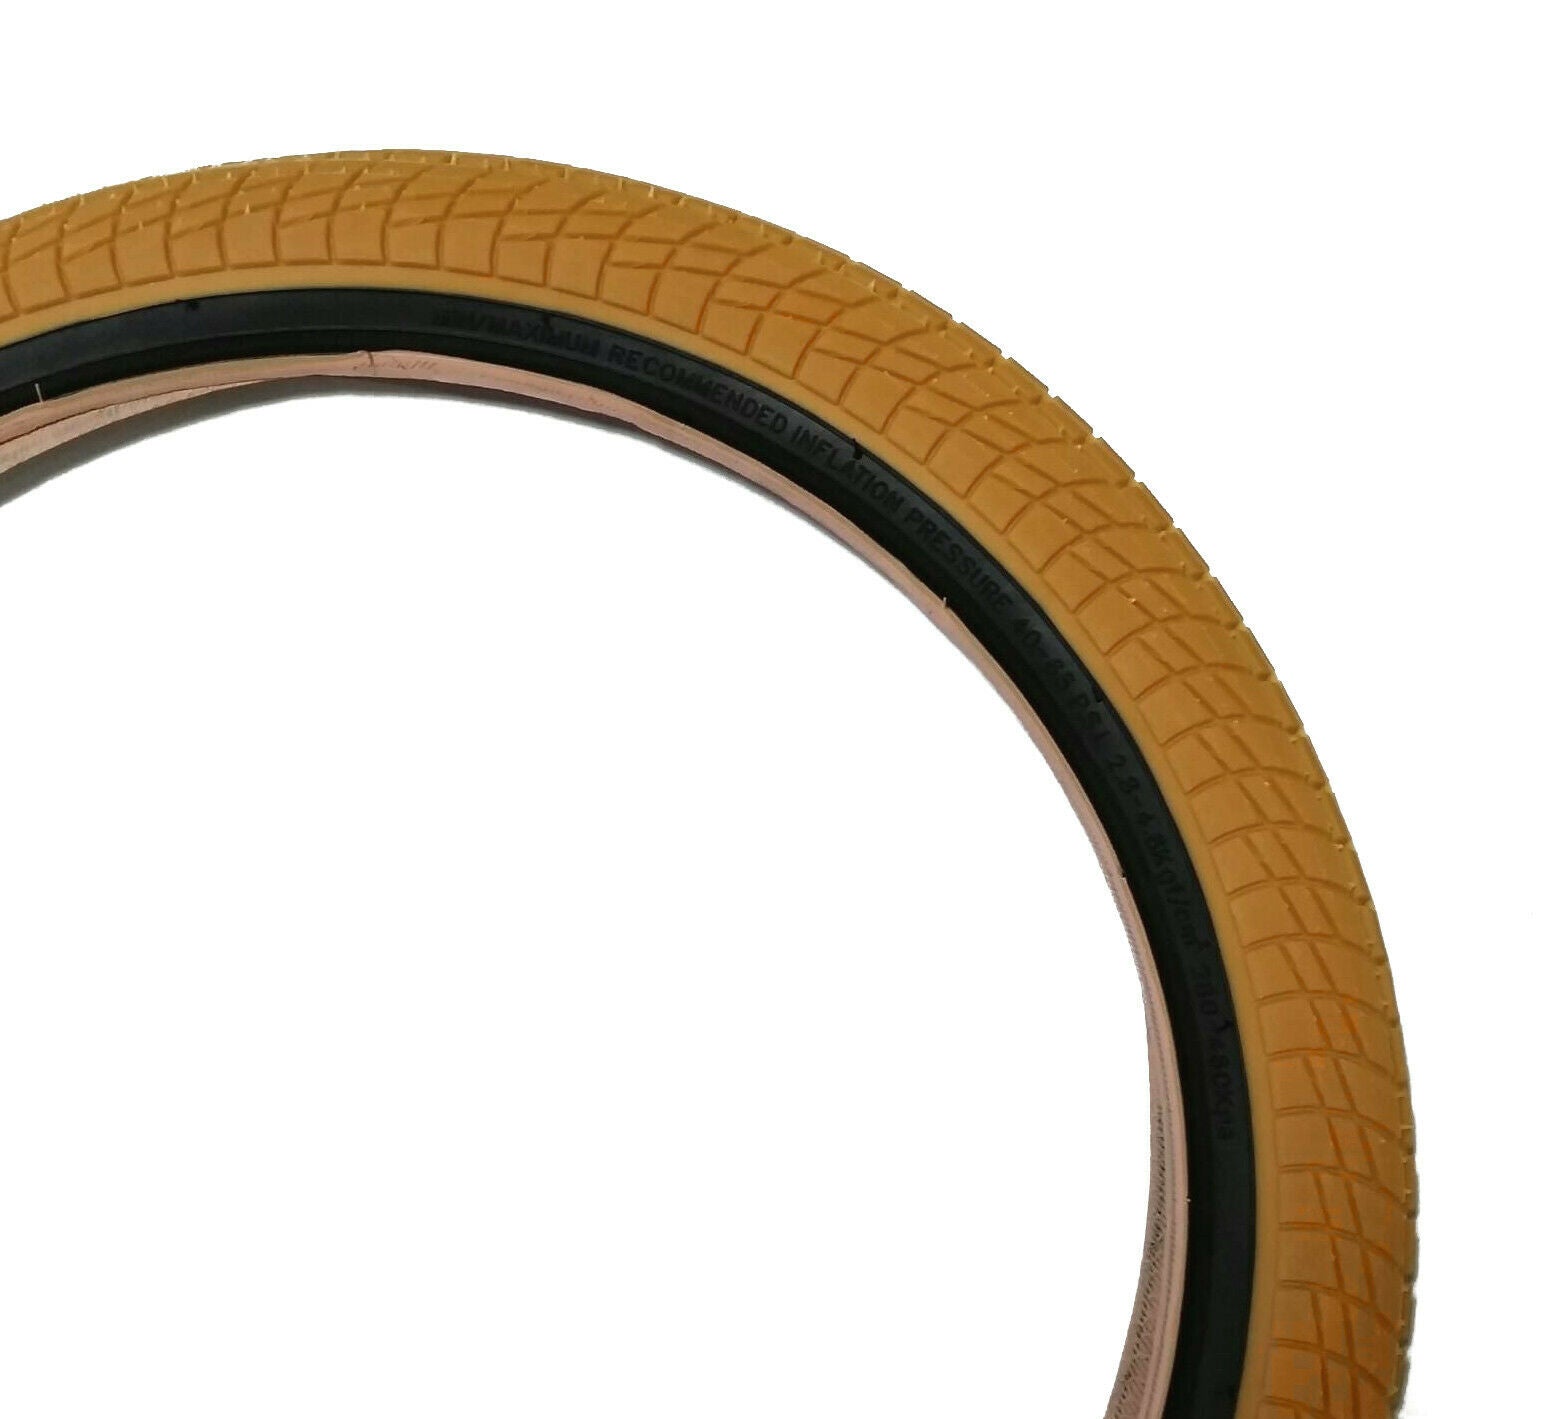 20x2.25 Kenda Kontact BMX Tire - Gum w/ Black Sidewall